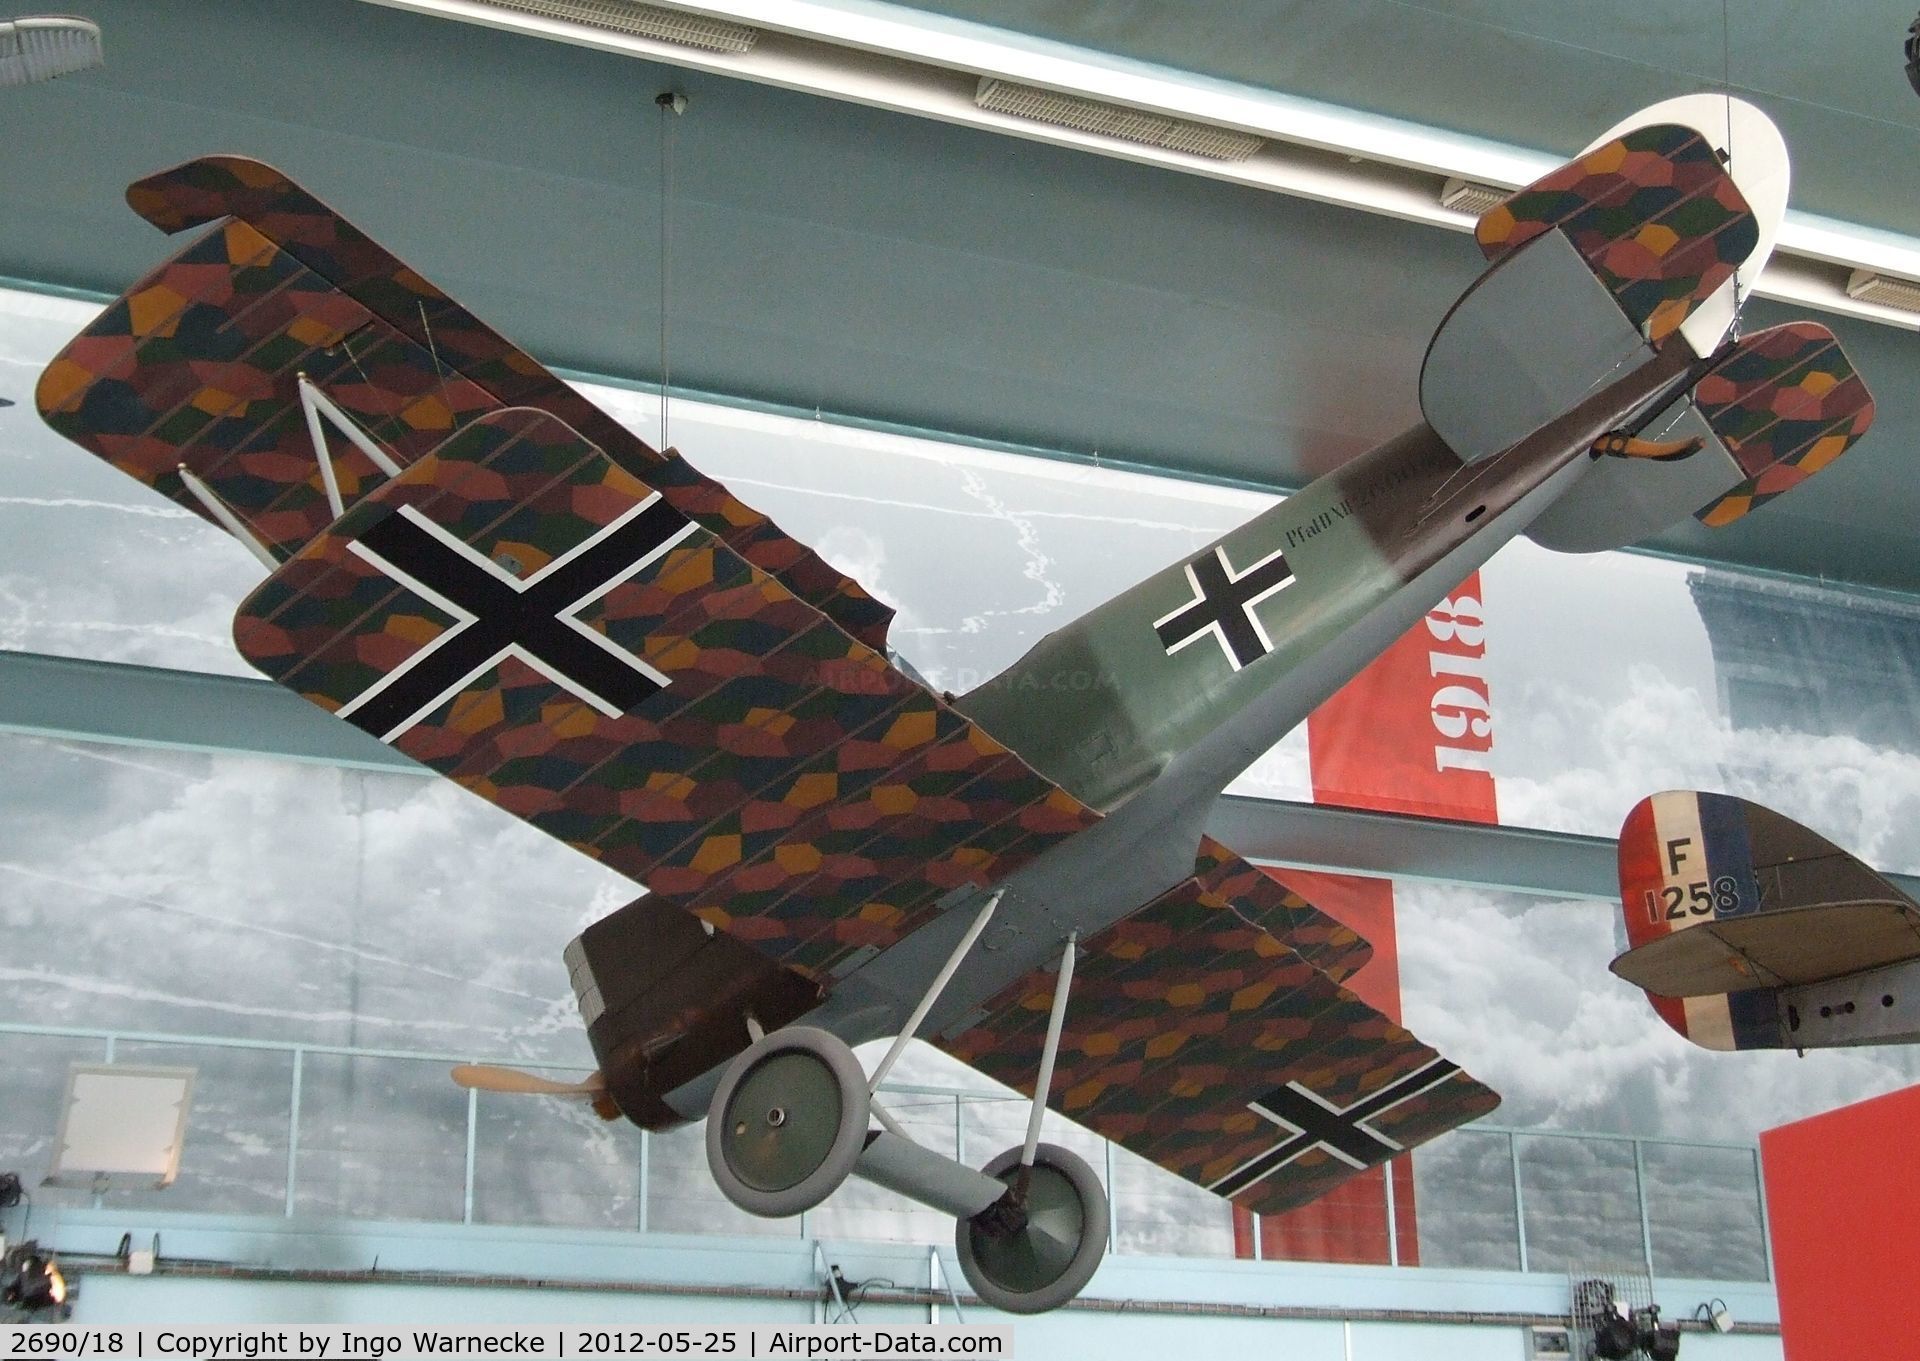 2690/18, 1918 Pfalz DXII C/N 3240, Pfalz D XII at the Musee de l'Air, Paris/Le Bourget